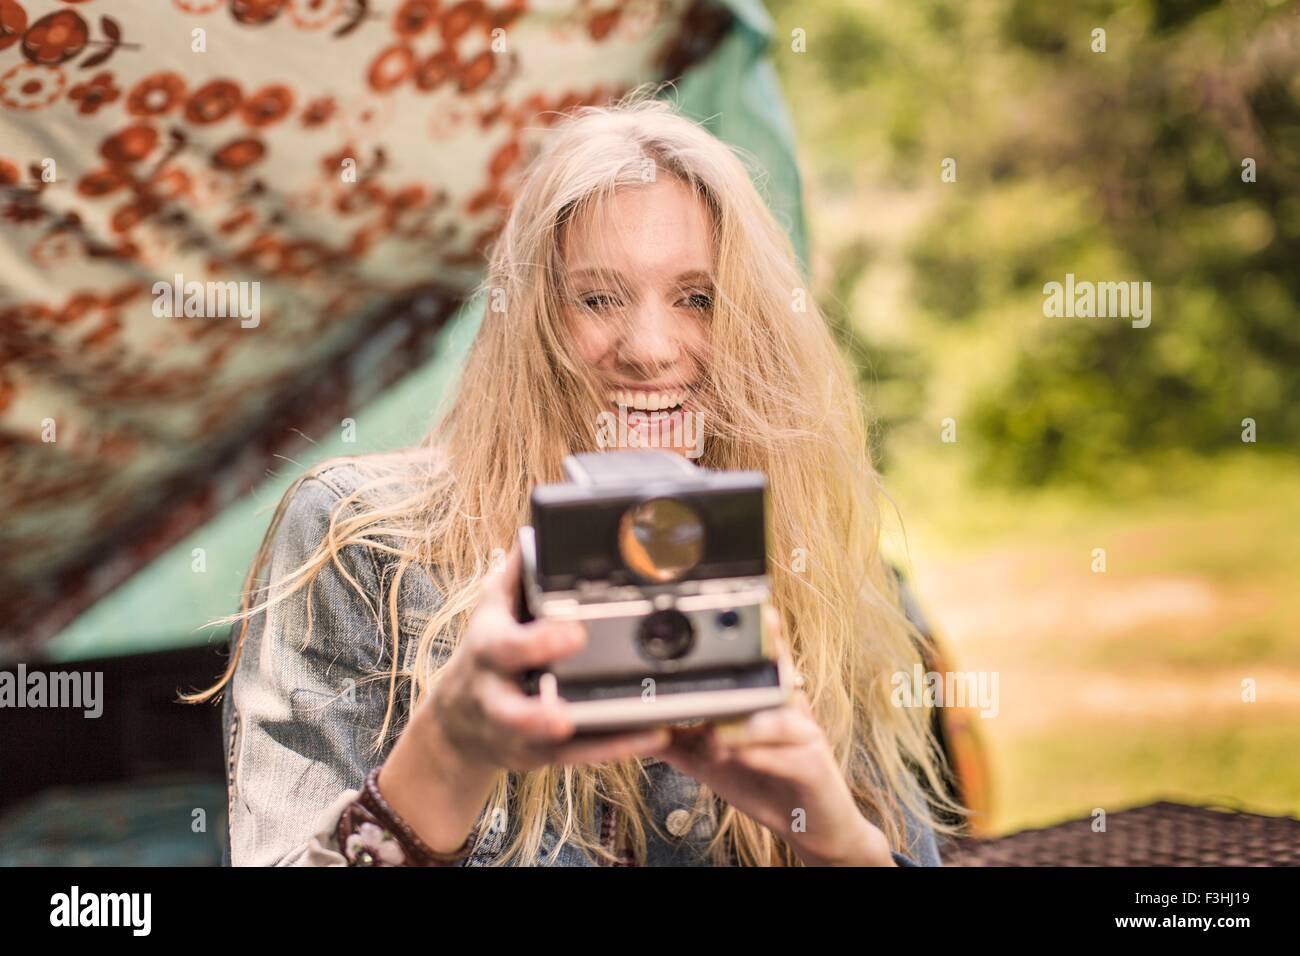 Porträt der jungen Frau mit Sofortbild-Kamera zu fotografieren, während camping Stockfoto